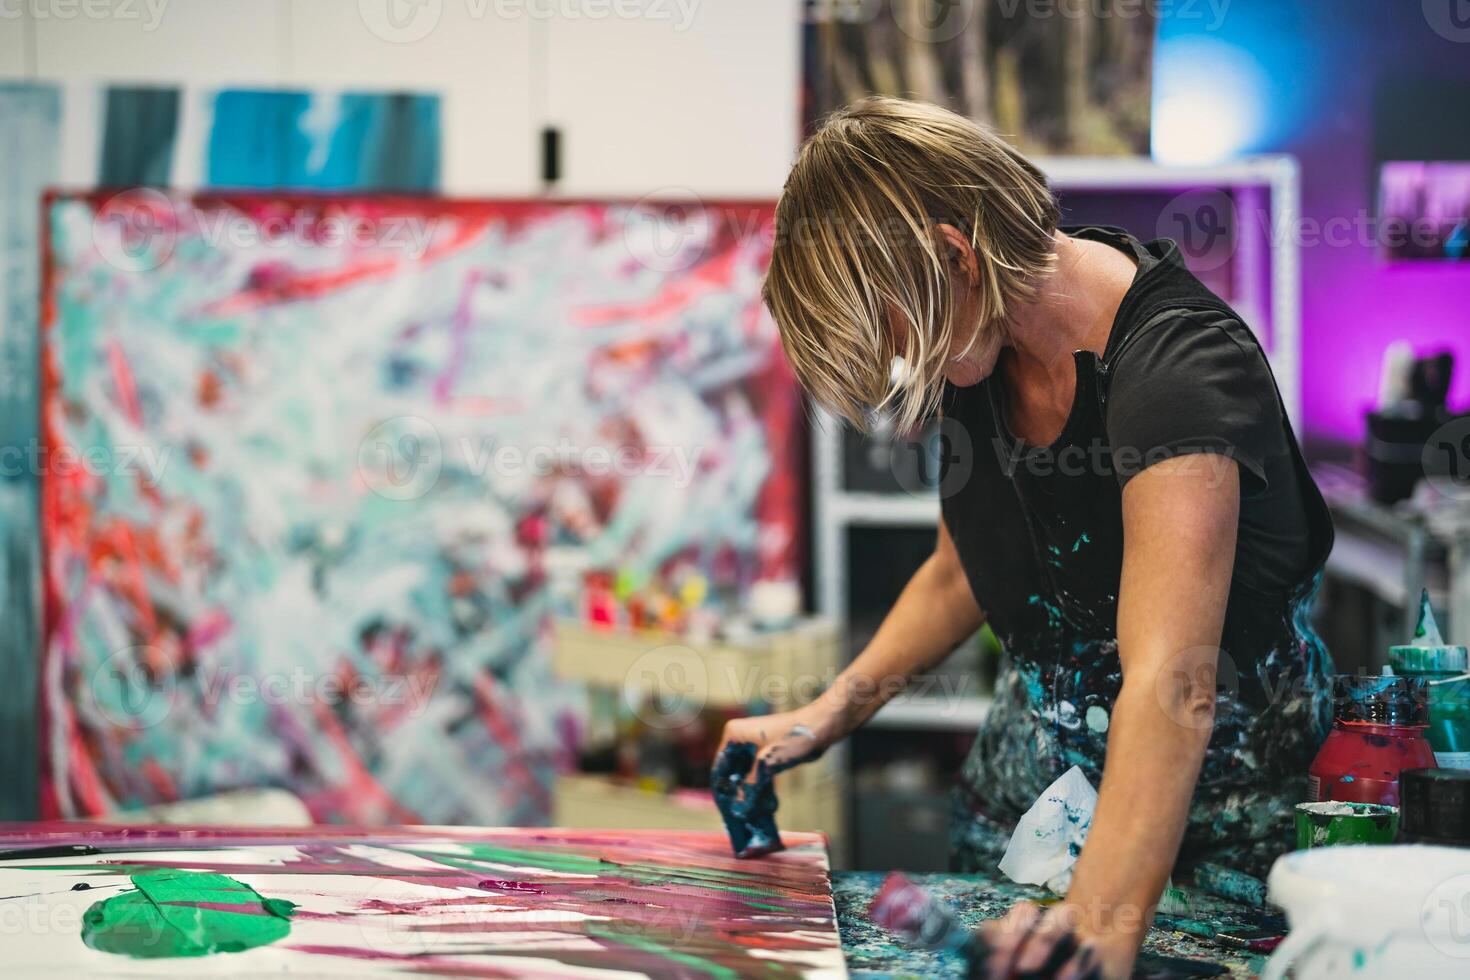 kvinna konstnär målning på duk i verkstad studio - målare arbete och kreativ hantverk begrepp foto